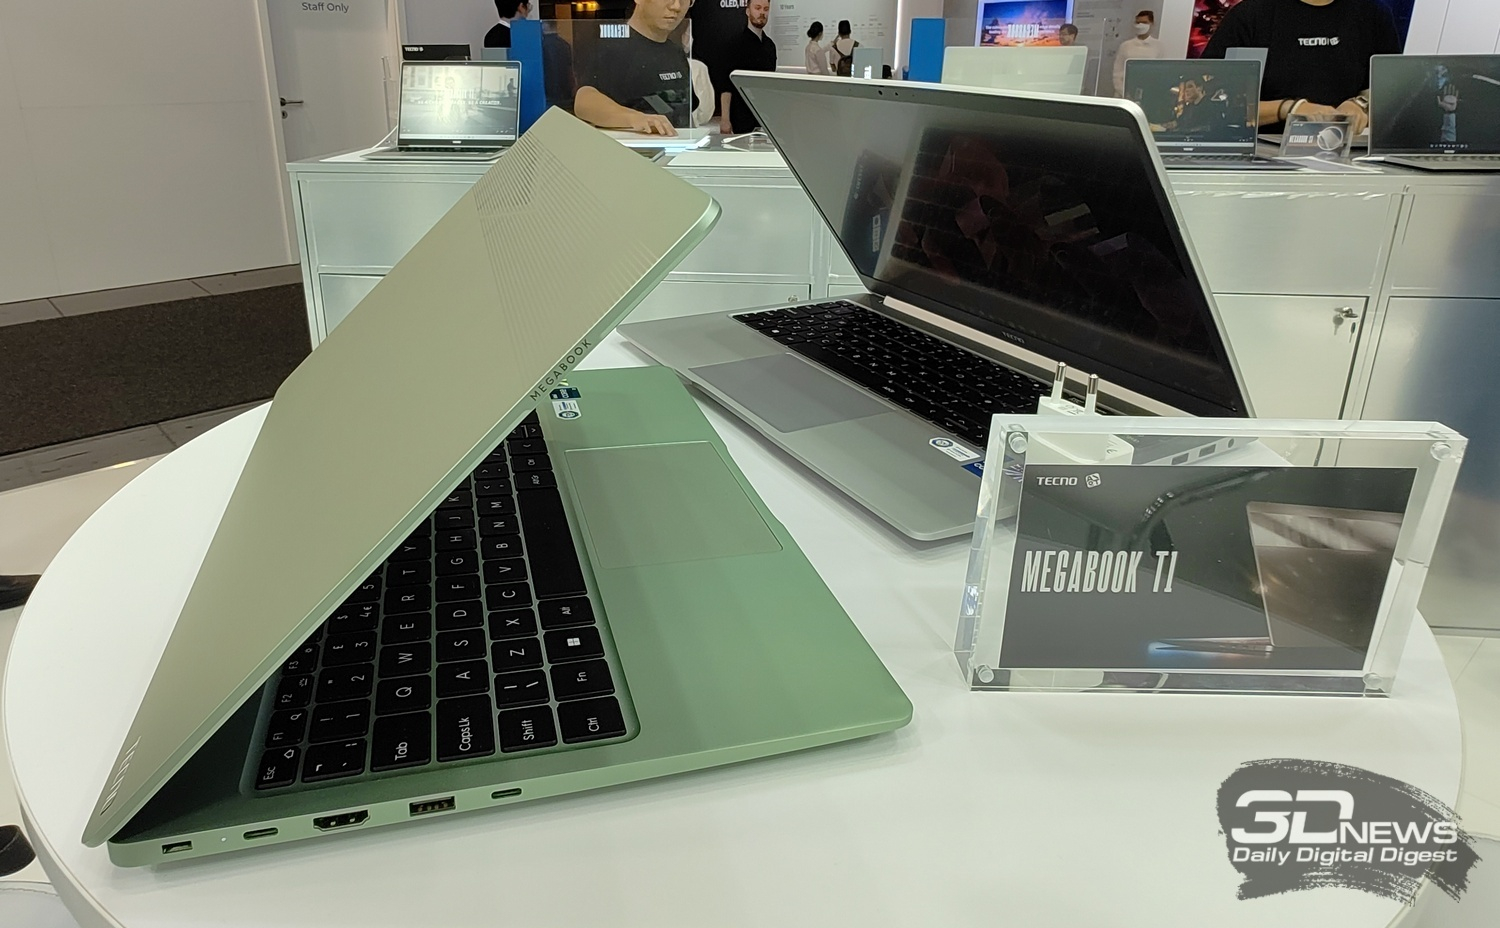 Купить ноутбук техно. Ноутбук Tecno MEGABOOK t1 зеленый. Techno MEGABOOK t1. Ноутбук Техно Мегабук. 15.6" Ноутбук Tecno MEGABOOK t1 зеленый.